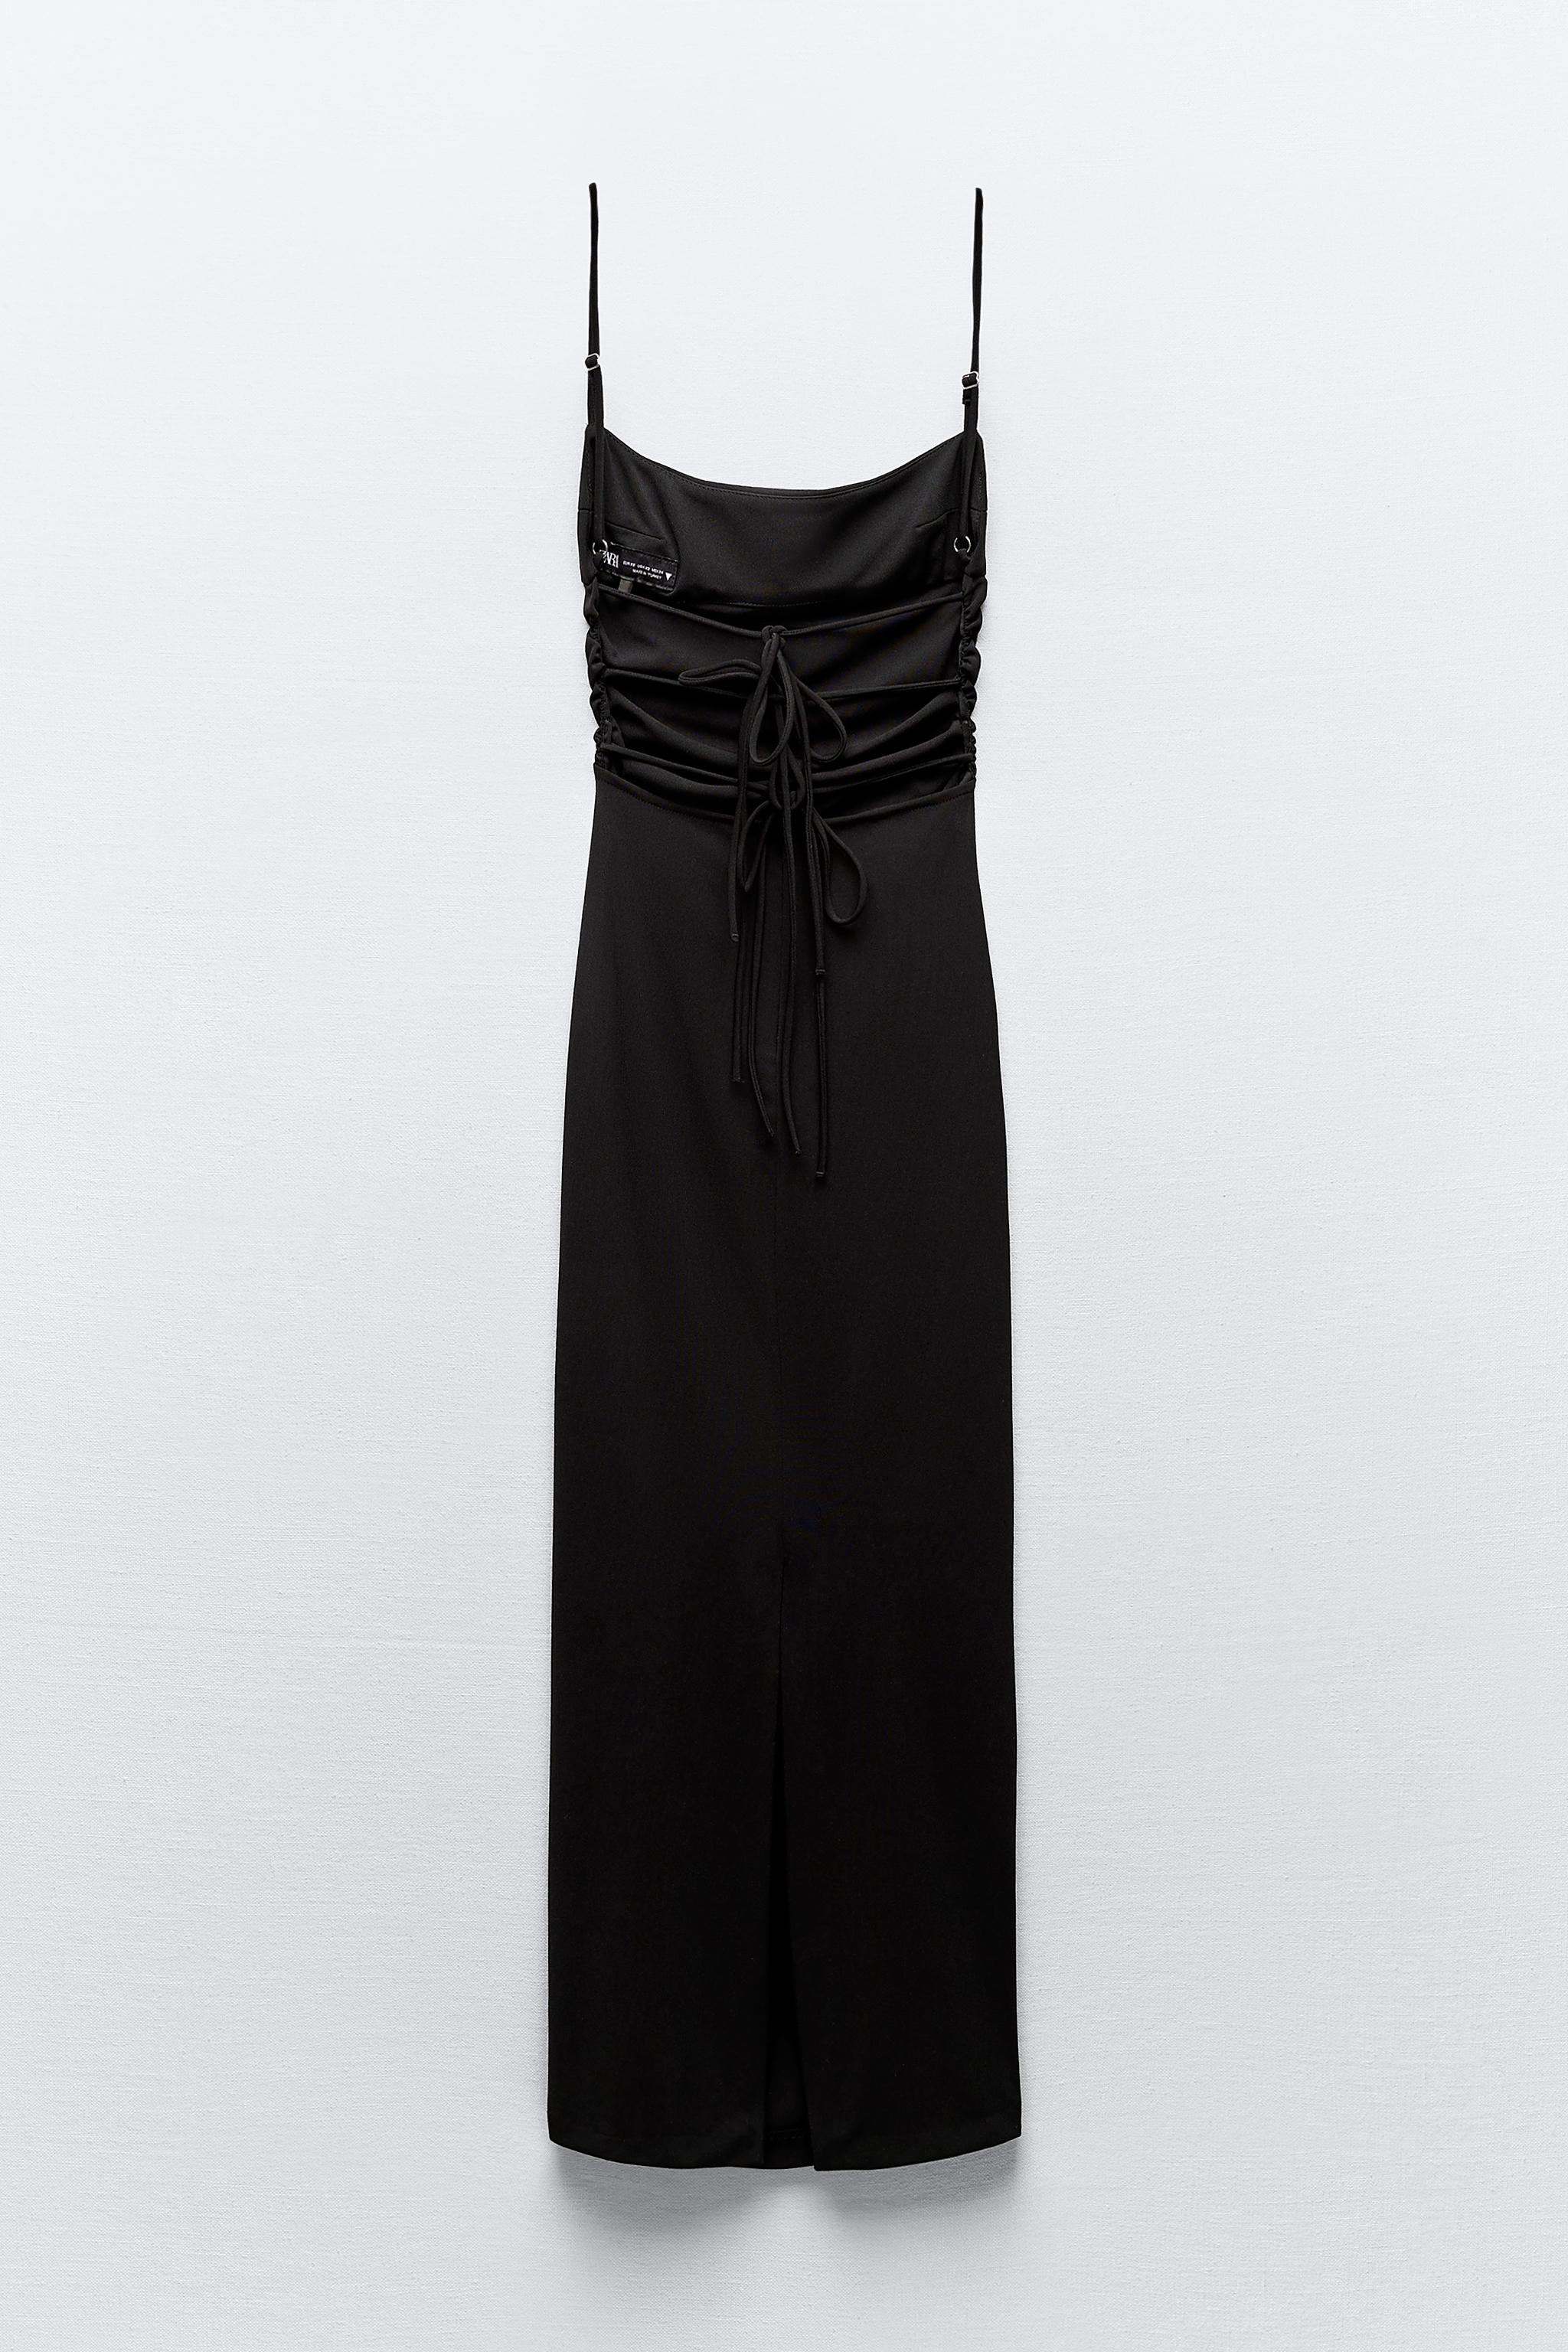 Twyla Backless Strappy Dress with Bralette Top - Inky Black Jamdani